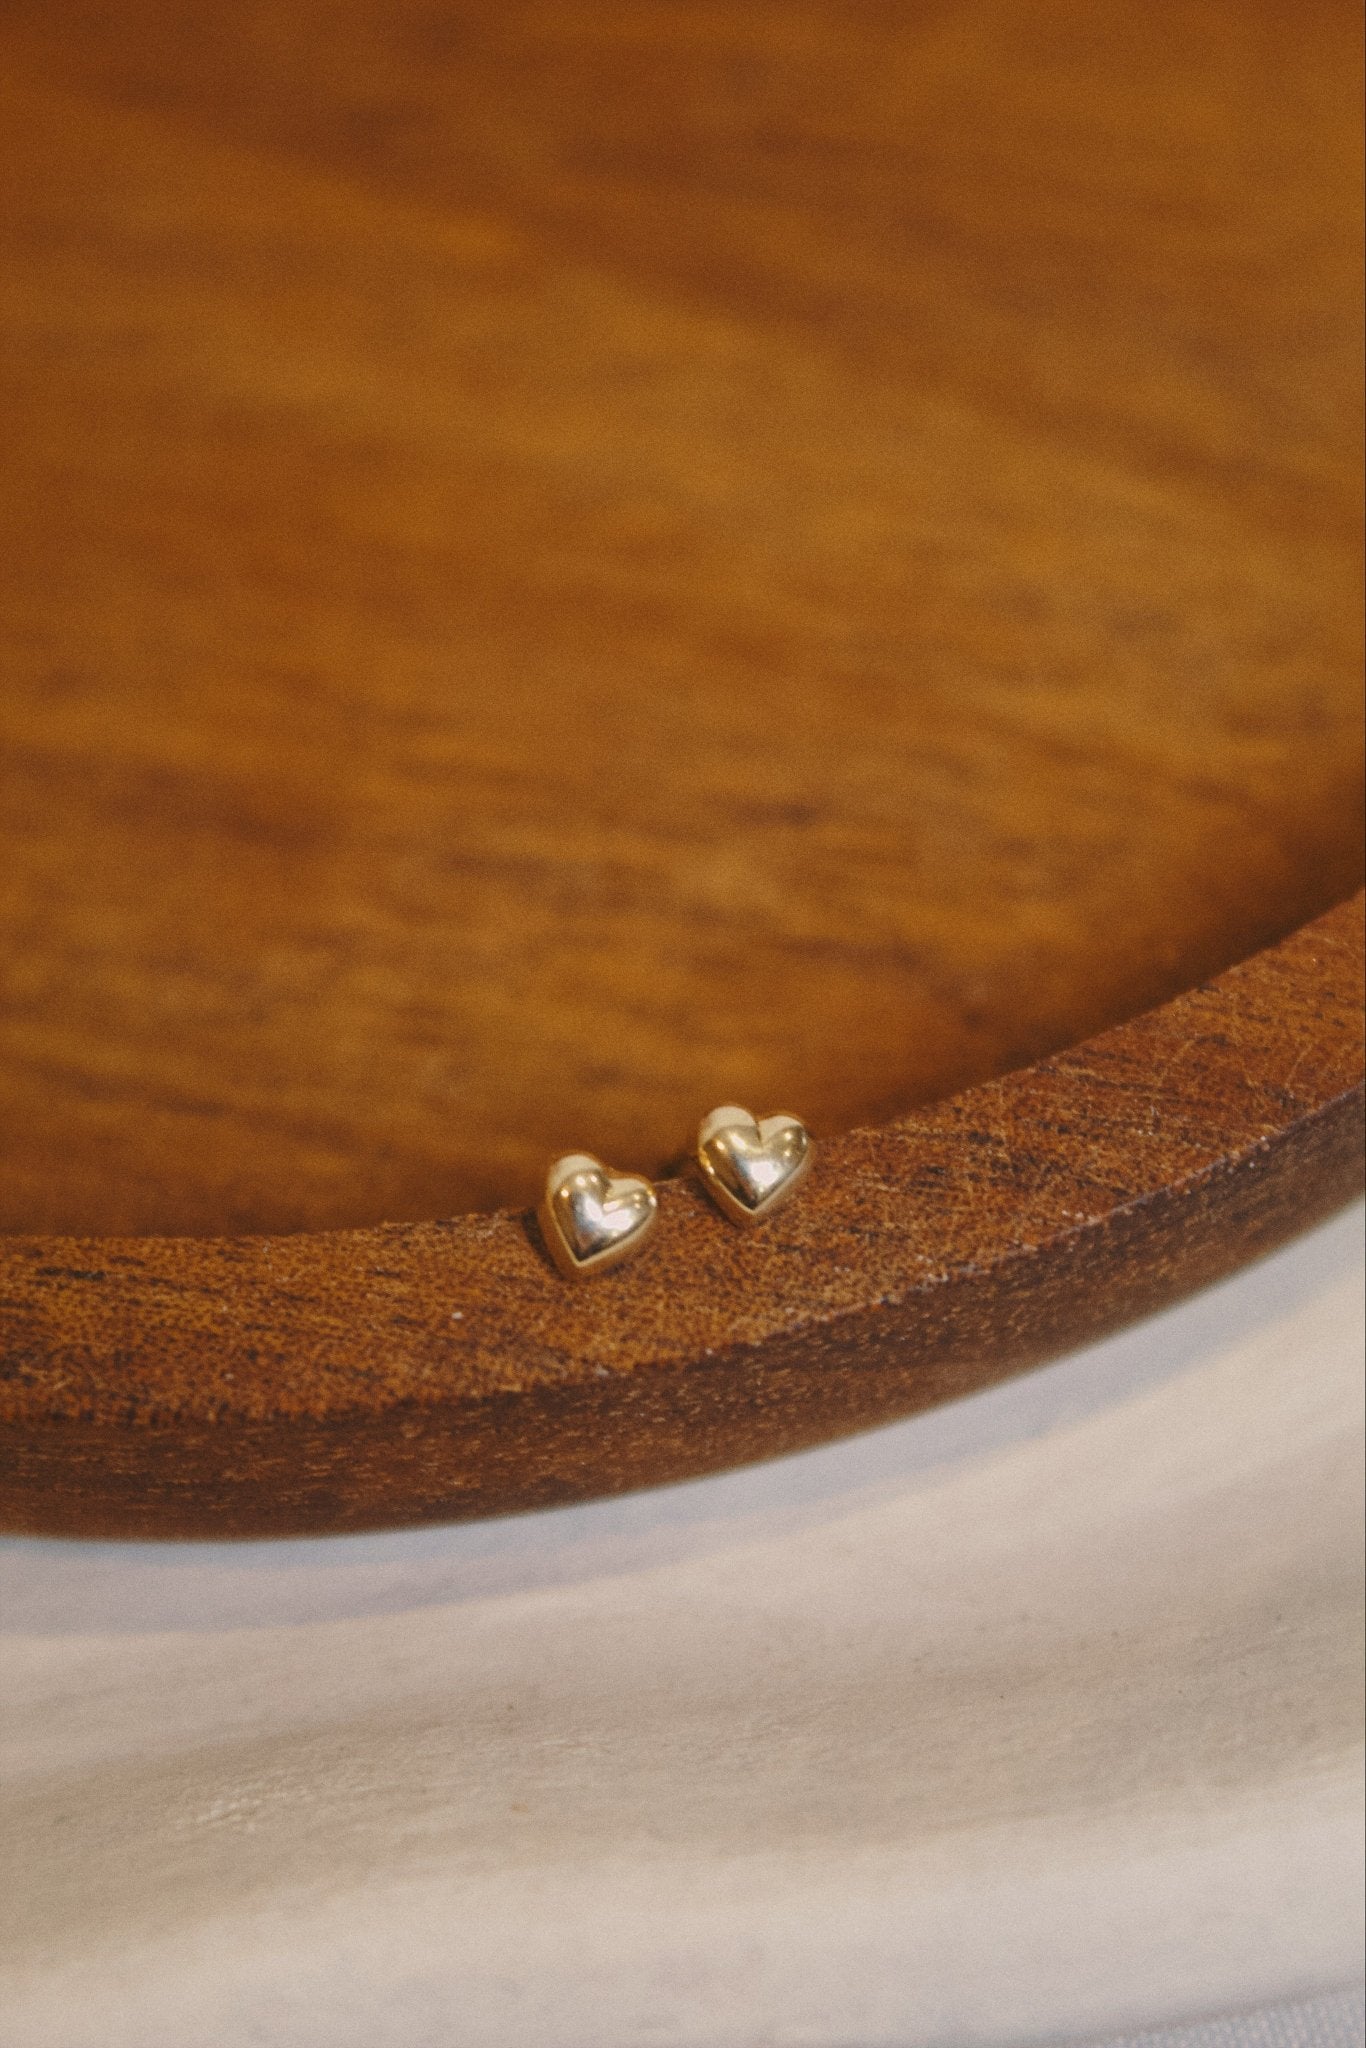 9K Solid Gold Heart Stud Earrings - Jewellery Hut